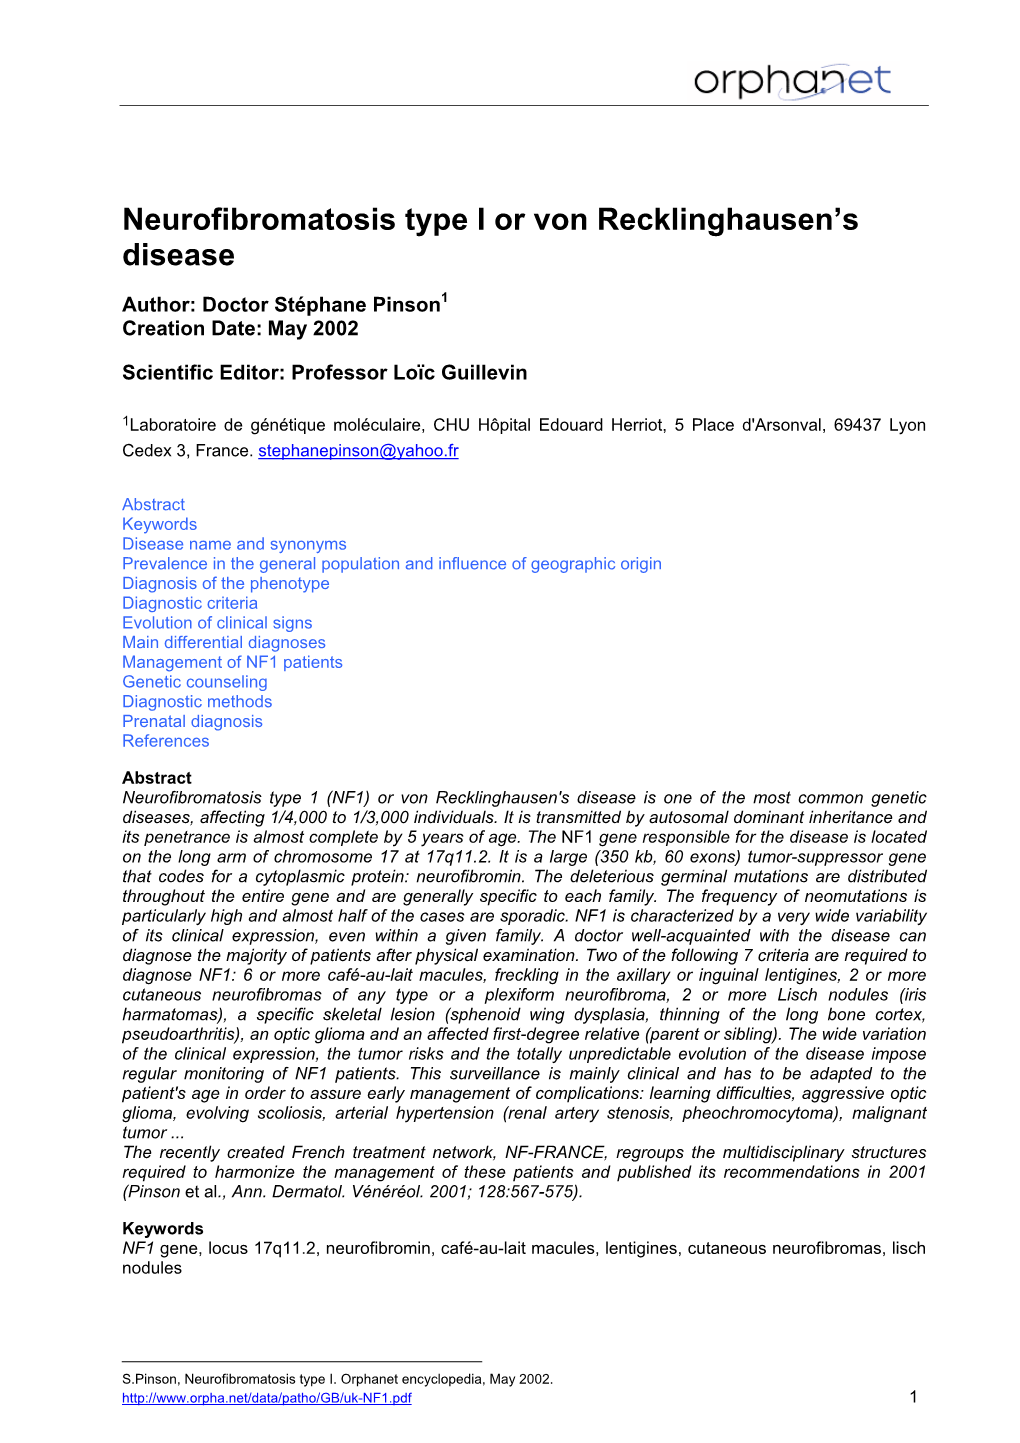 Neurofibromatosis Type I Or Von Recklinghausen's Disease